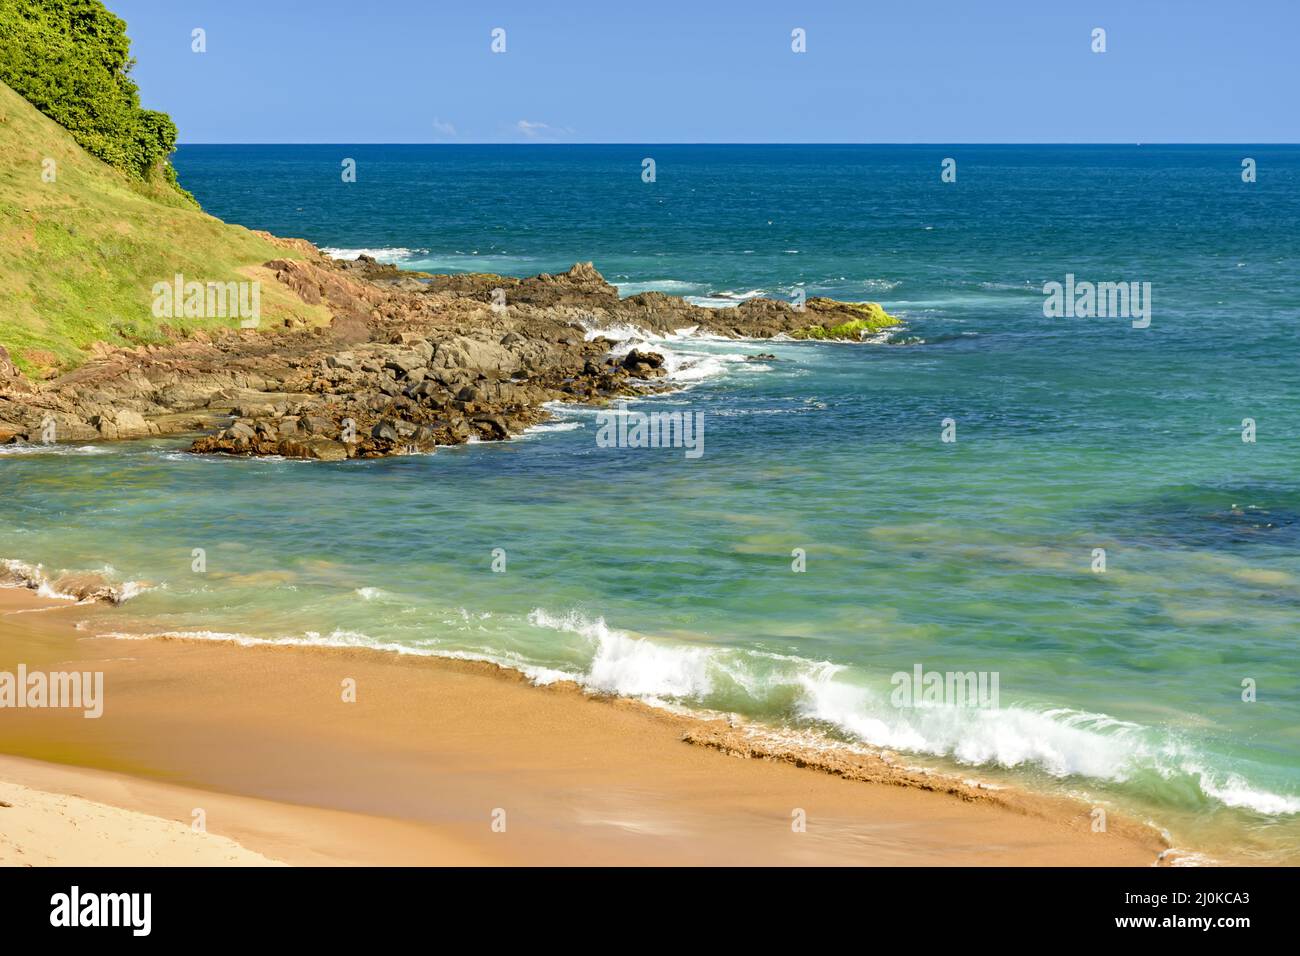 Spiaggia tropicale deserta con belle acque cristalline Foto Stock